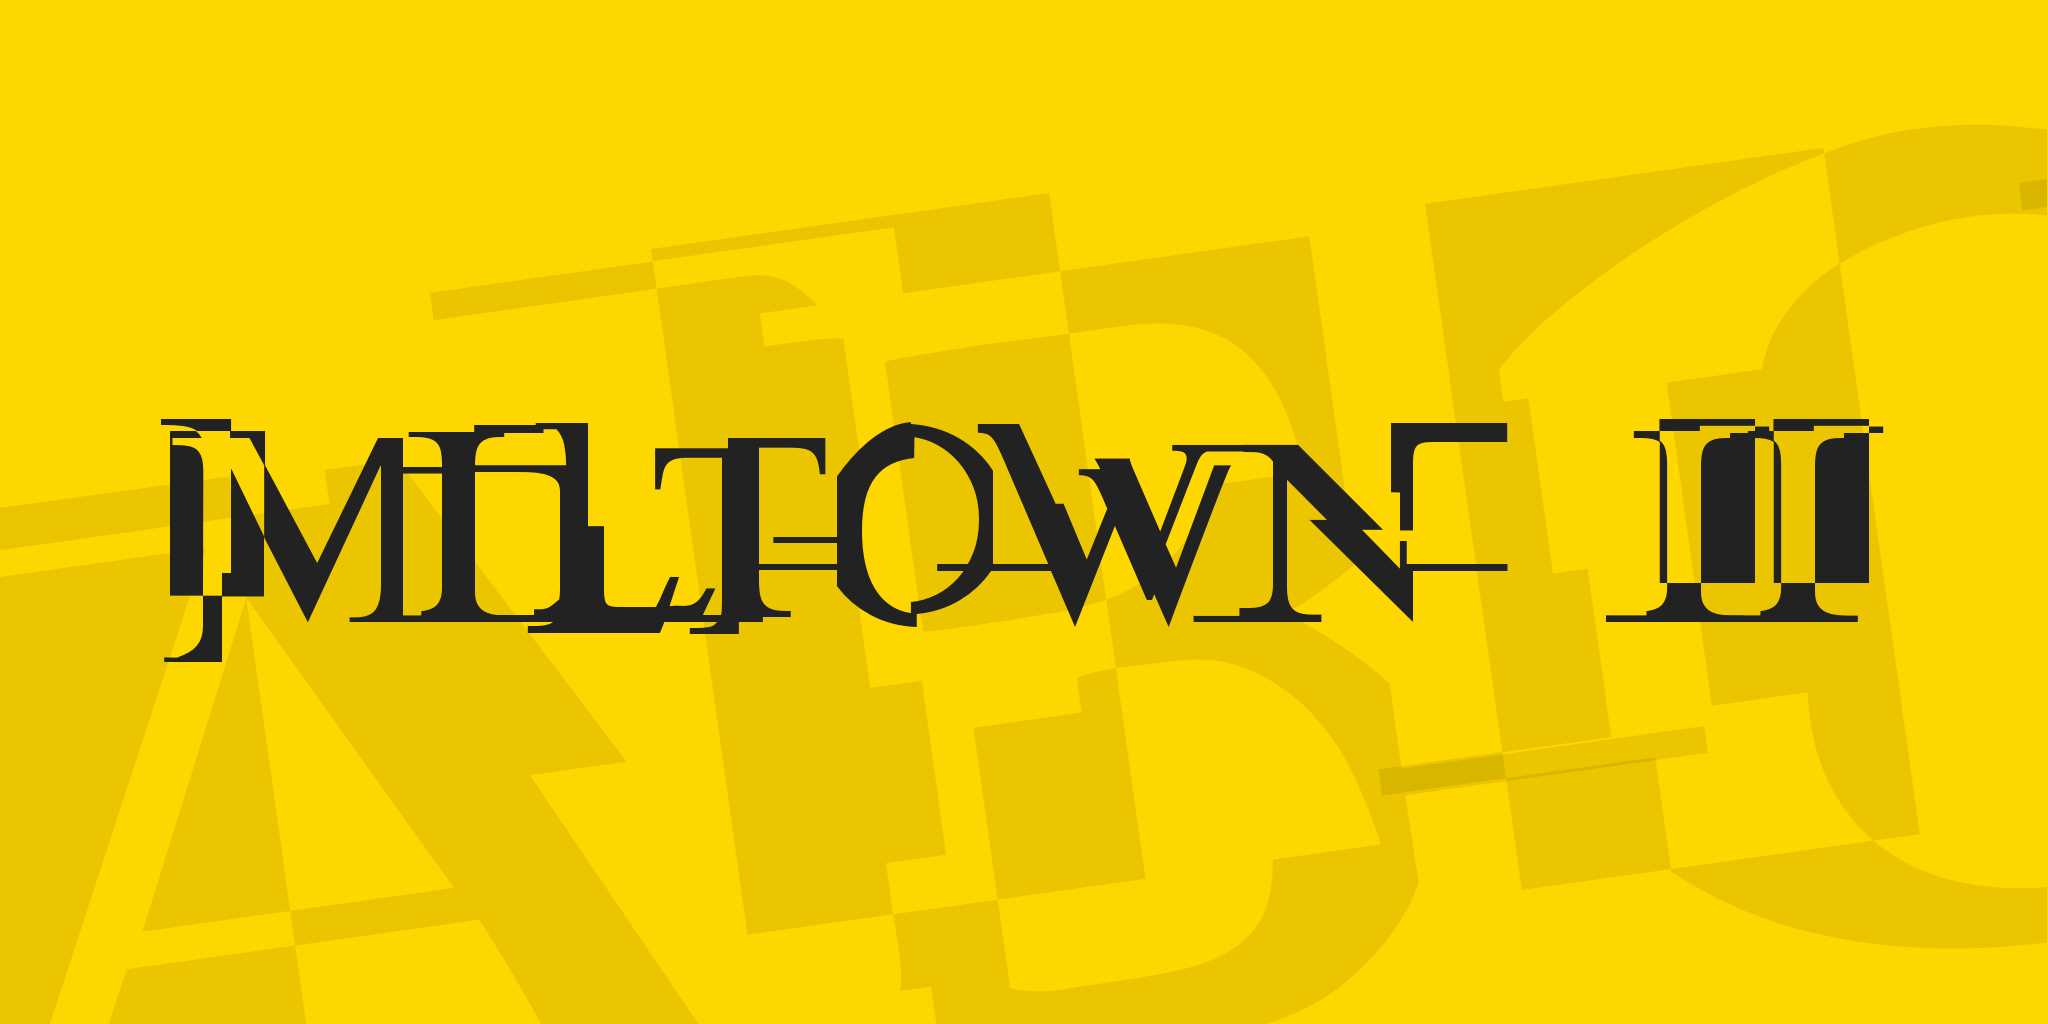 Miltown II